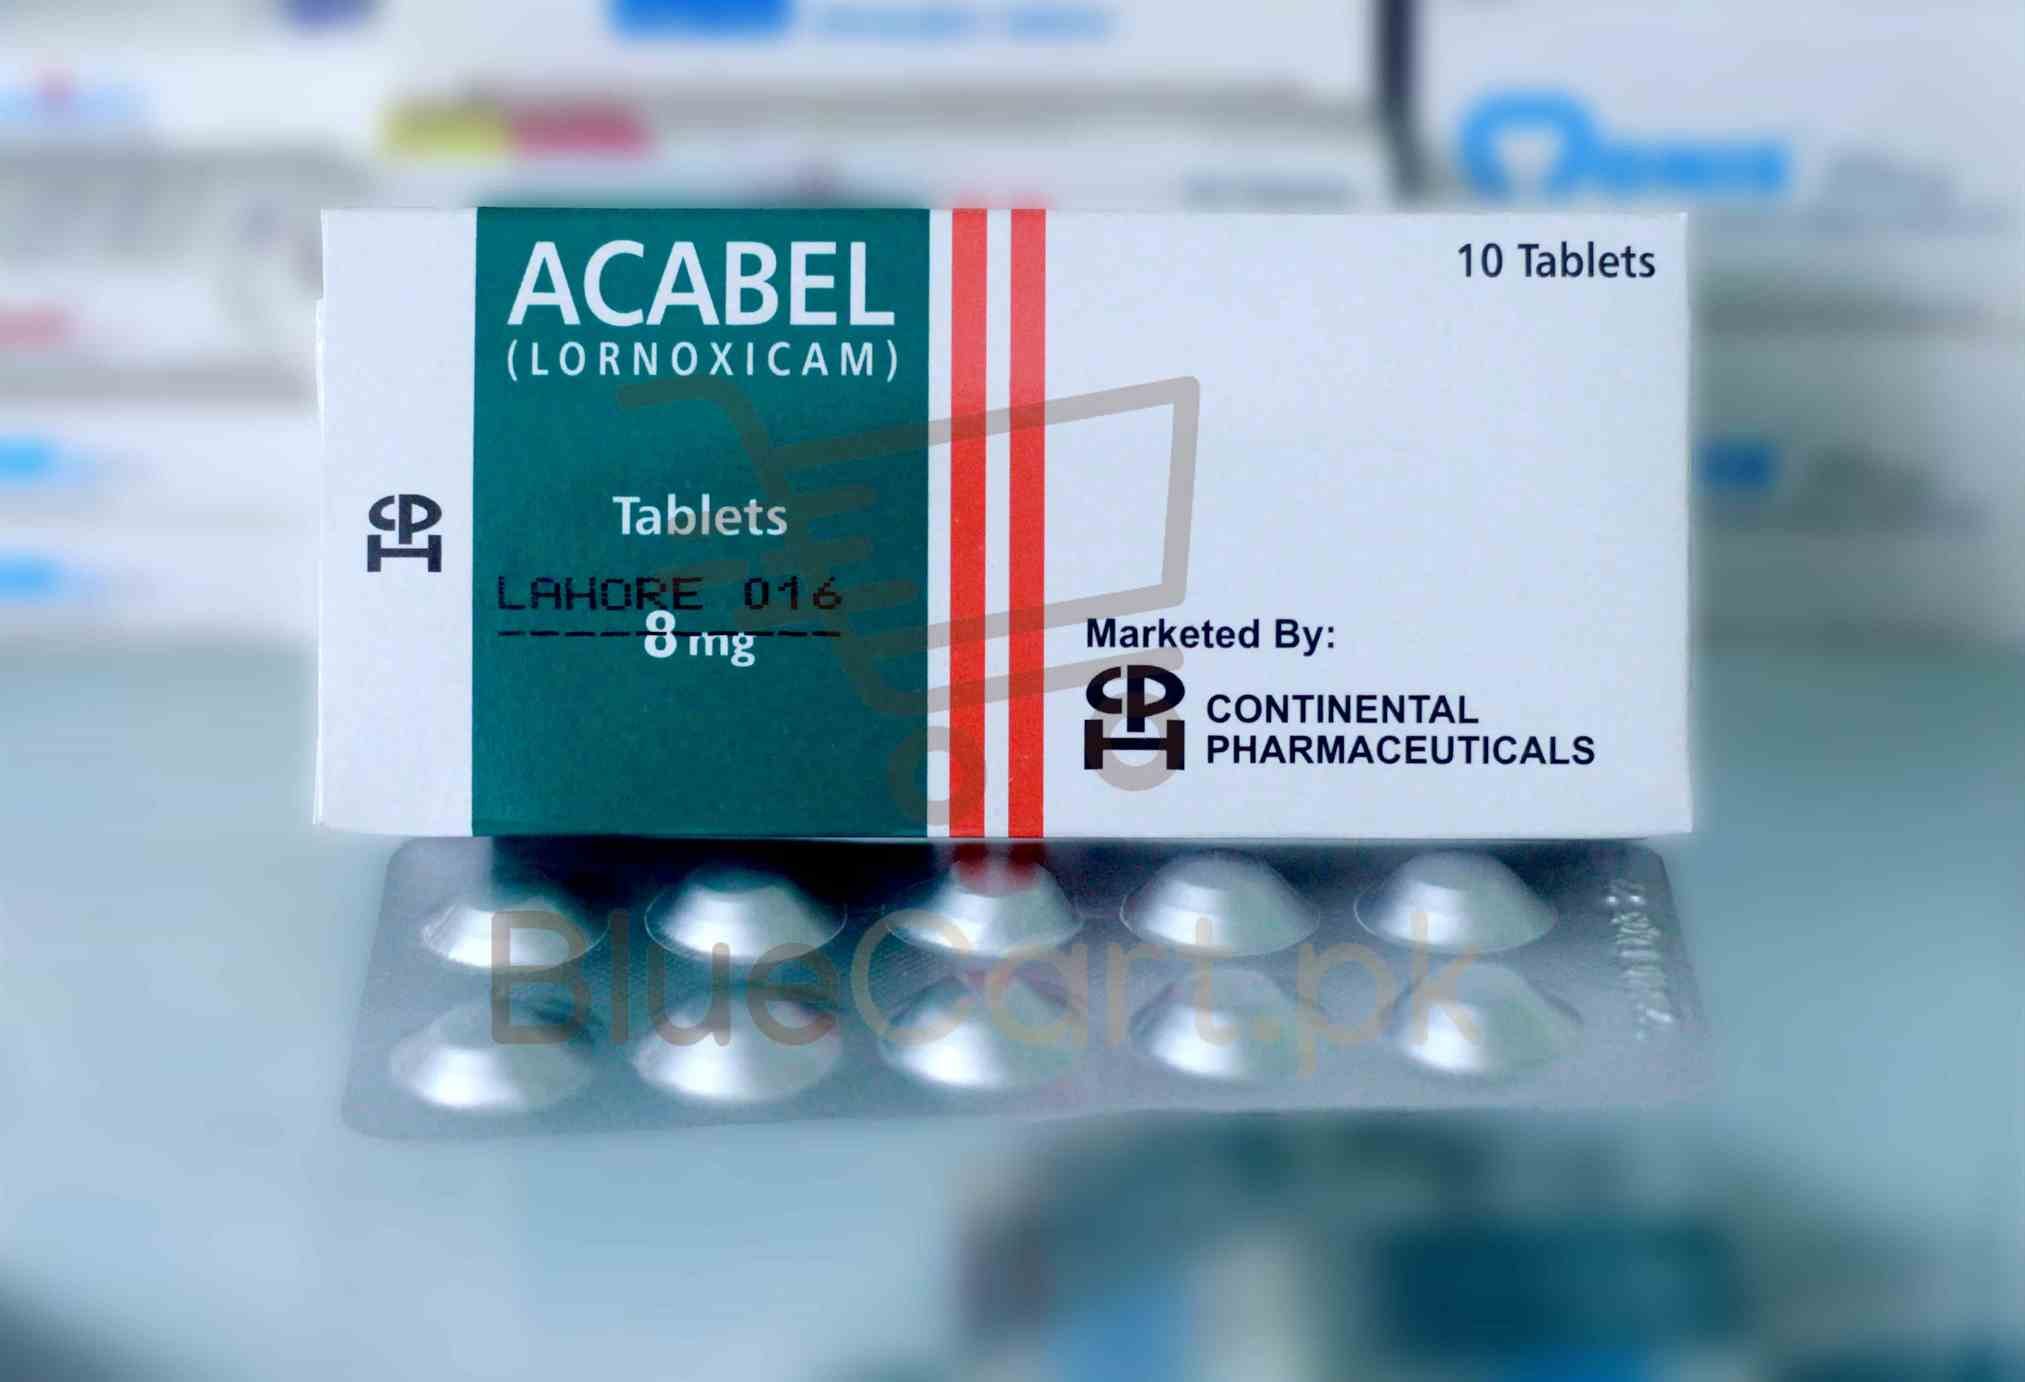 Acabel Tablet 8mg